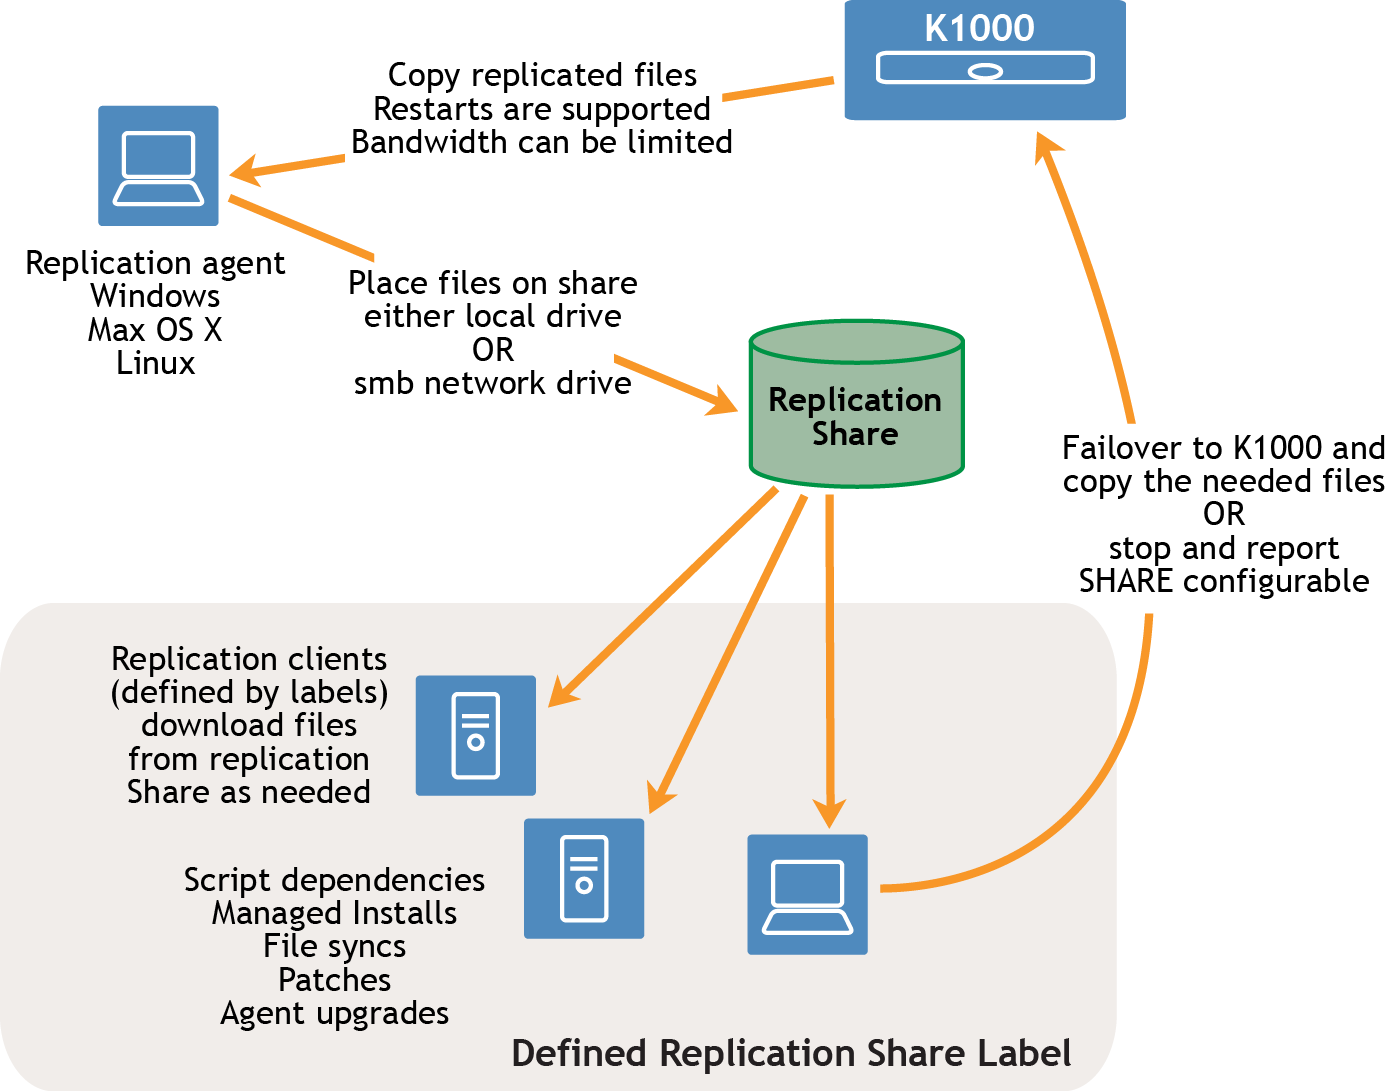 En el flujo de tareas, una flecha va de un dispositivo a un agente de replicación. La flecha tiene una etiqueta que dice "Copiar archivos de replicación". Se admiten los reinicios. El ancho de banda puede estar limitado. El agente de replicación puede ser ejecutado en un dispositivo con Windows, con Mac OS X o con Linux. Una flecha va desde el agente de replicación a los recursos compartidos de replicación. La etiqueta dice lo siguiente: "Colocar el archivo en el recurso, ya sea una unidad local o una unidad de red SMB". Desde el recurso compartido de replicación, las flechas se dirigen a varios clientes de replicación que están definidos por una etiqueta de recurso compartido de replicación.